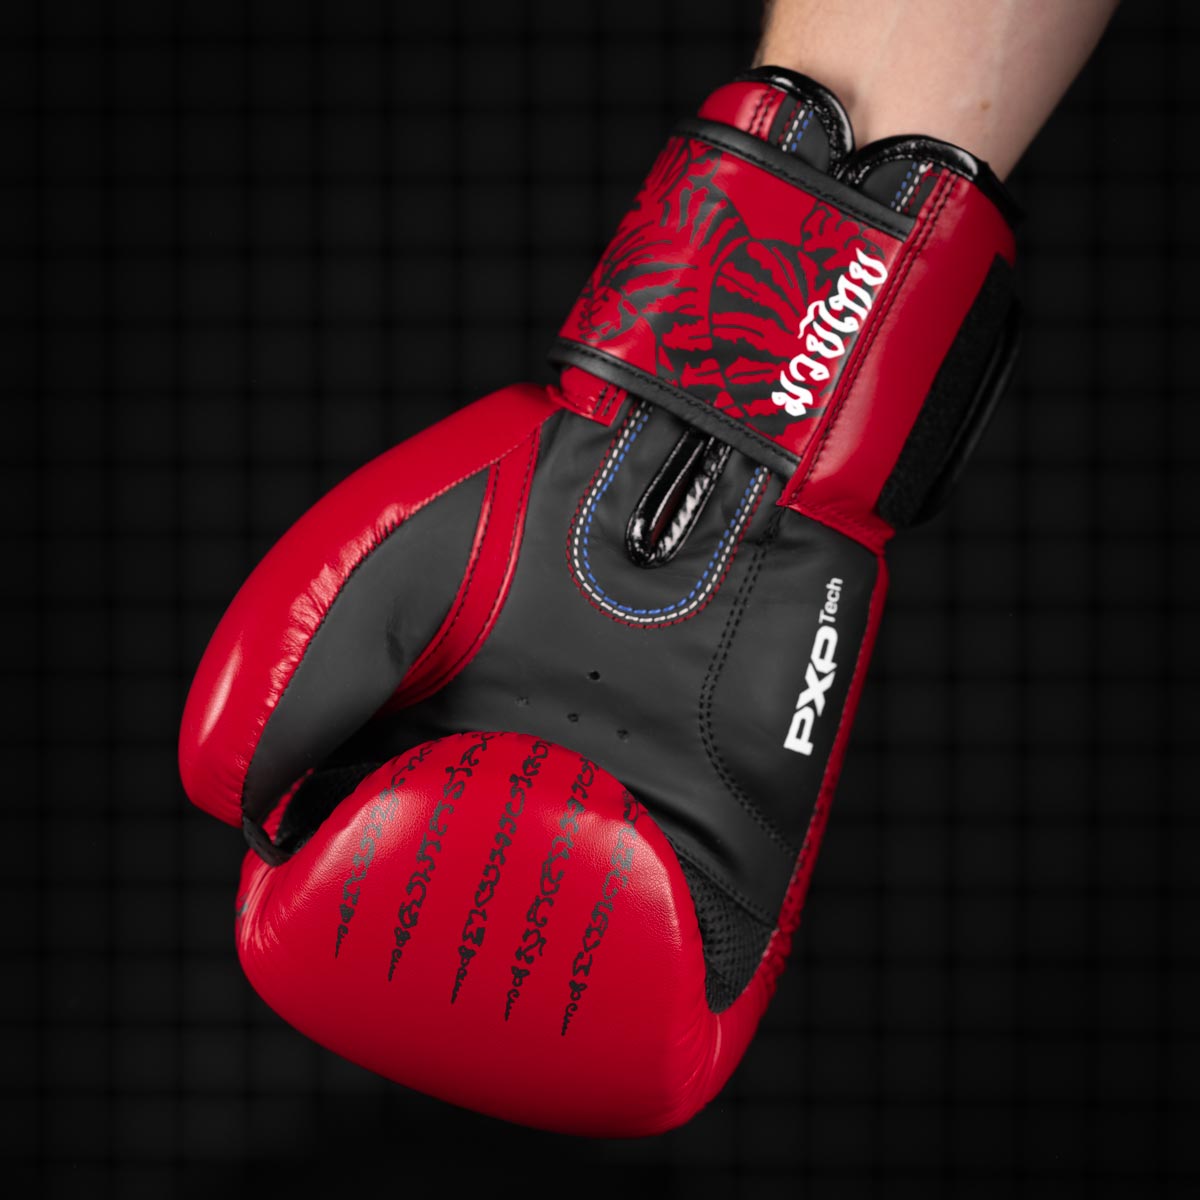 Die Phantom Muay Thai Boxhandschuhe in Rot verfügen über einen Mesh Einsatz an der Handinnenfläche für eine optimale Belüftung beim Training.